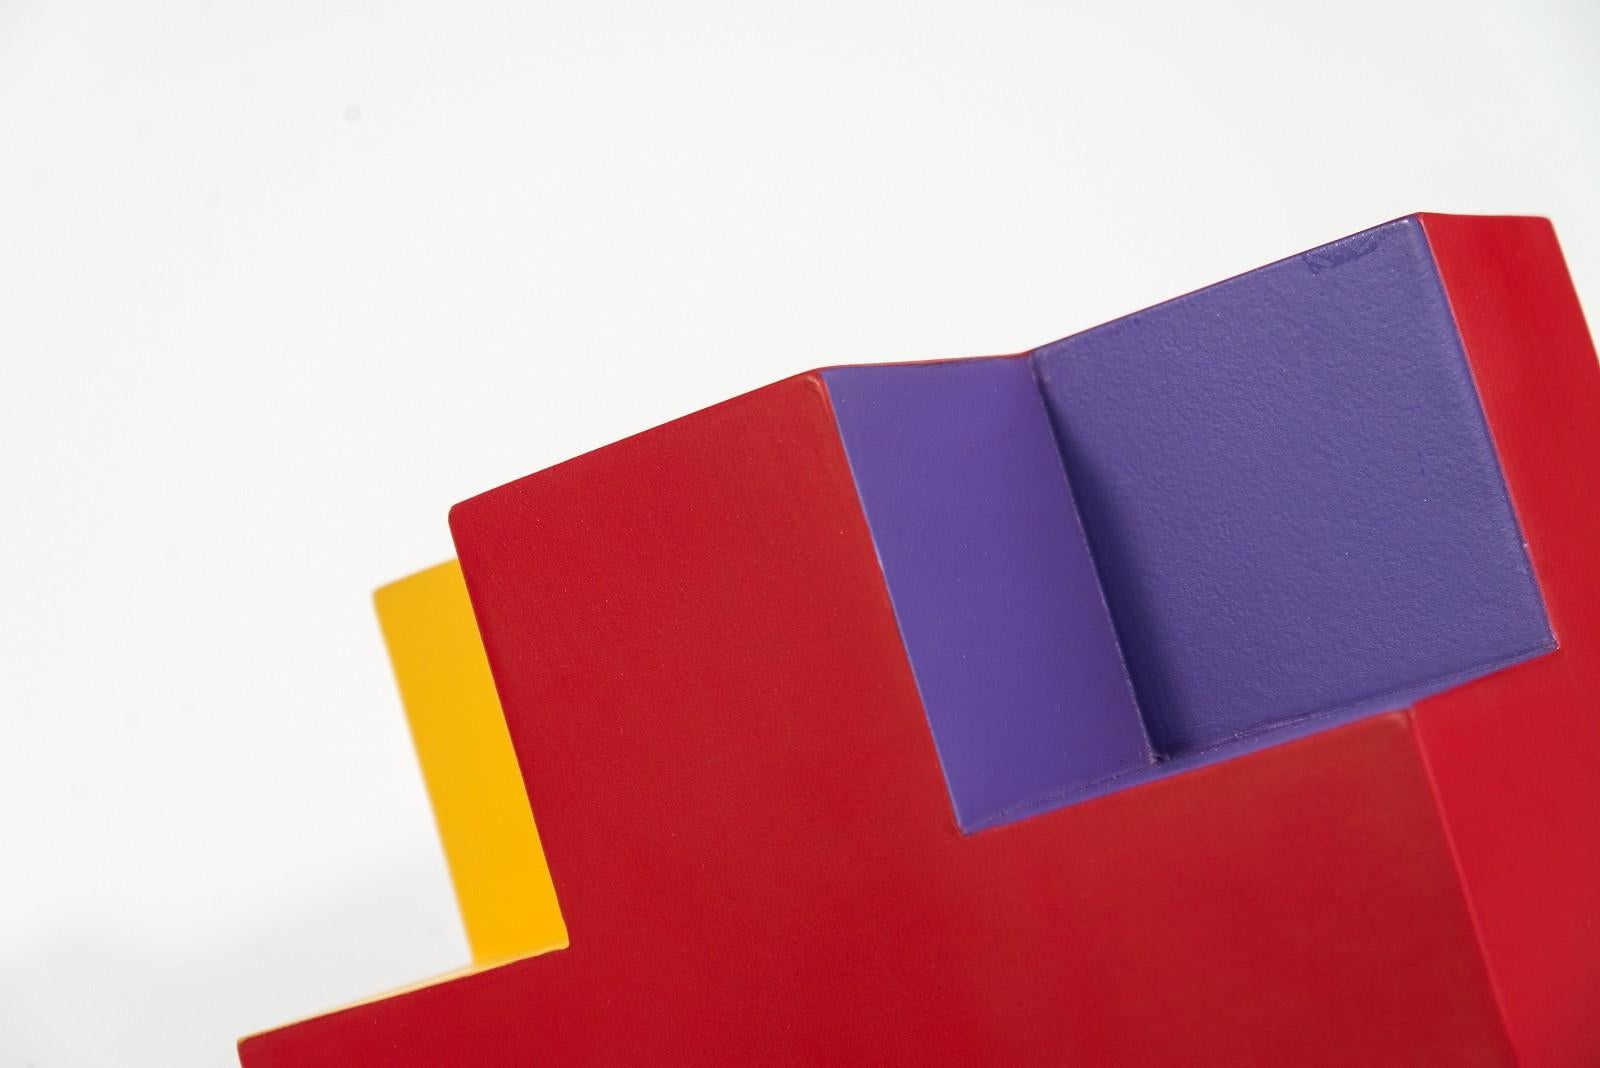 L'artiste québécois Phillipe Pallafray a utilisé plusieurs des couleurs du spectre - jaune, orange, rose, rouge et violet - pour créer une sculpture ludique et moderne ressemblant à un rubik's cube. Pallafray utilise des composants industriels -